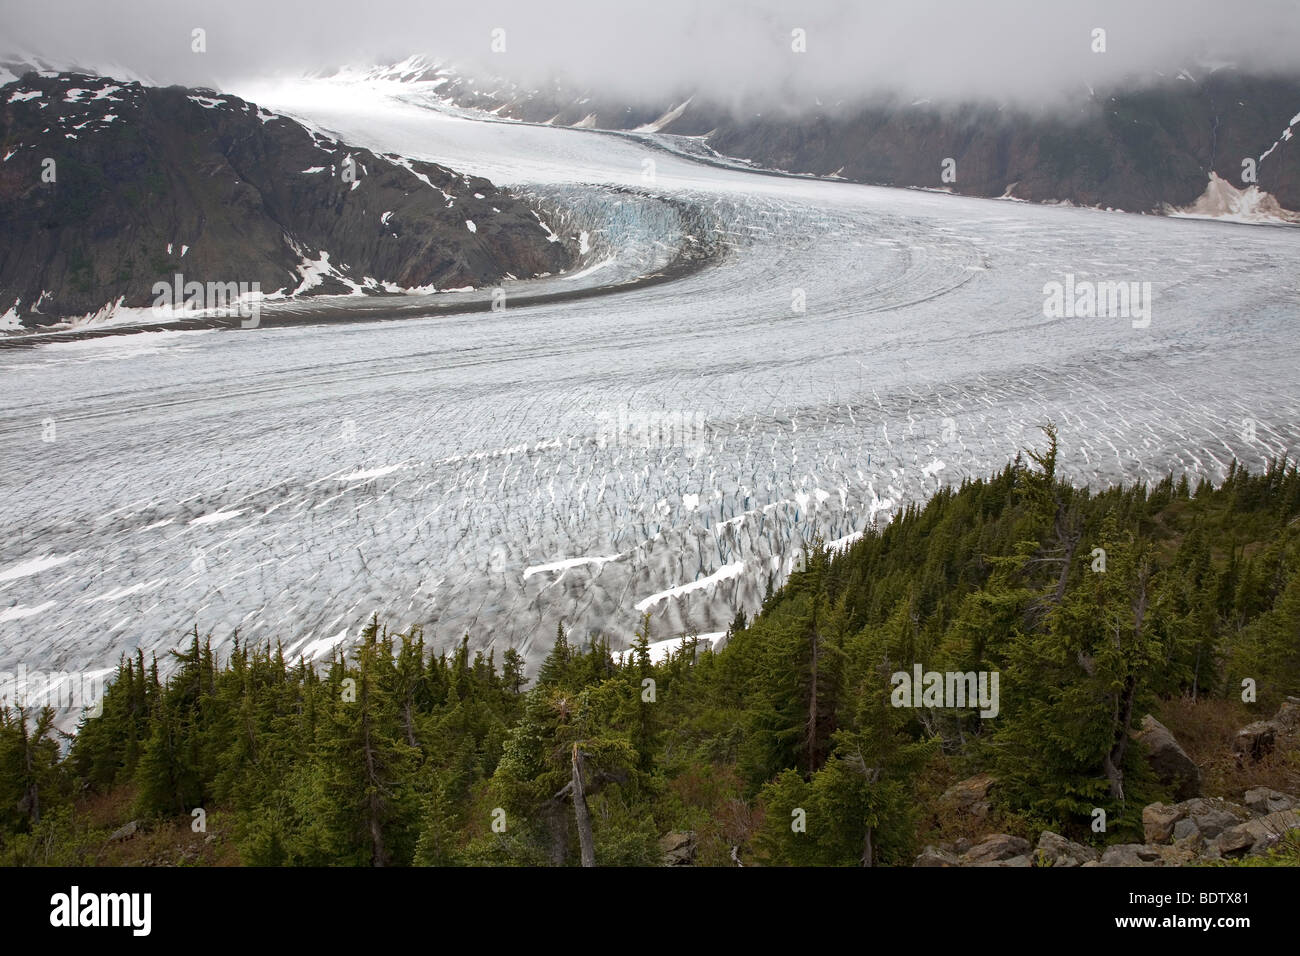 Salmon-Gletscher & Sitka-Fichten / Salmon-Glacier & Sitka Spruce / Picea sitchensis Stock Photo